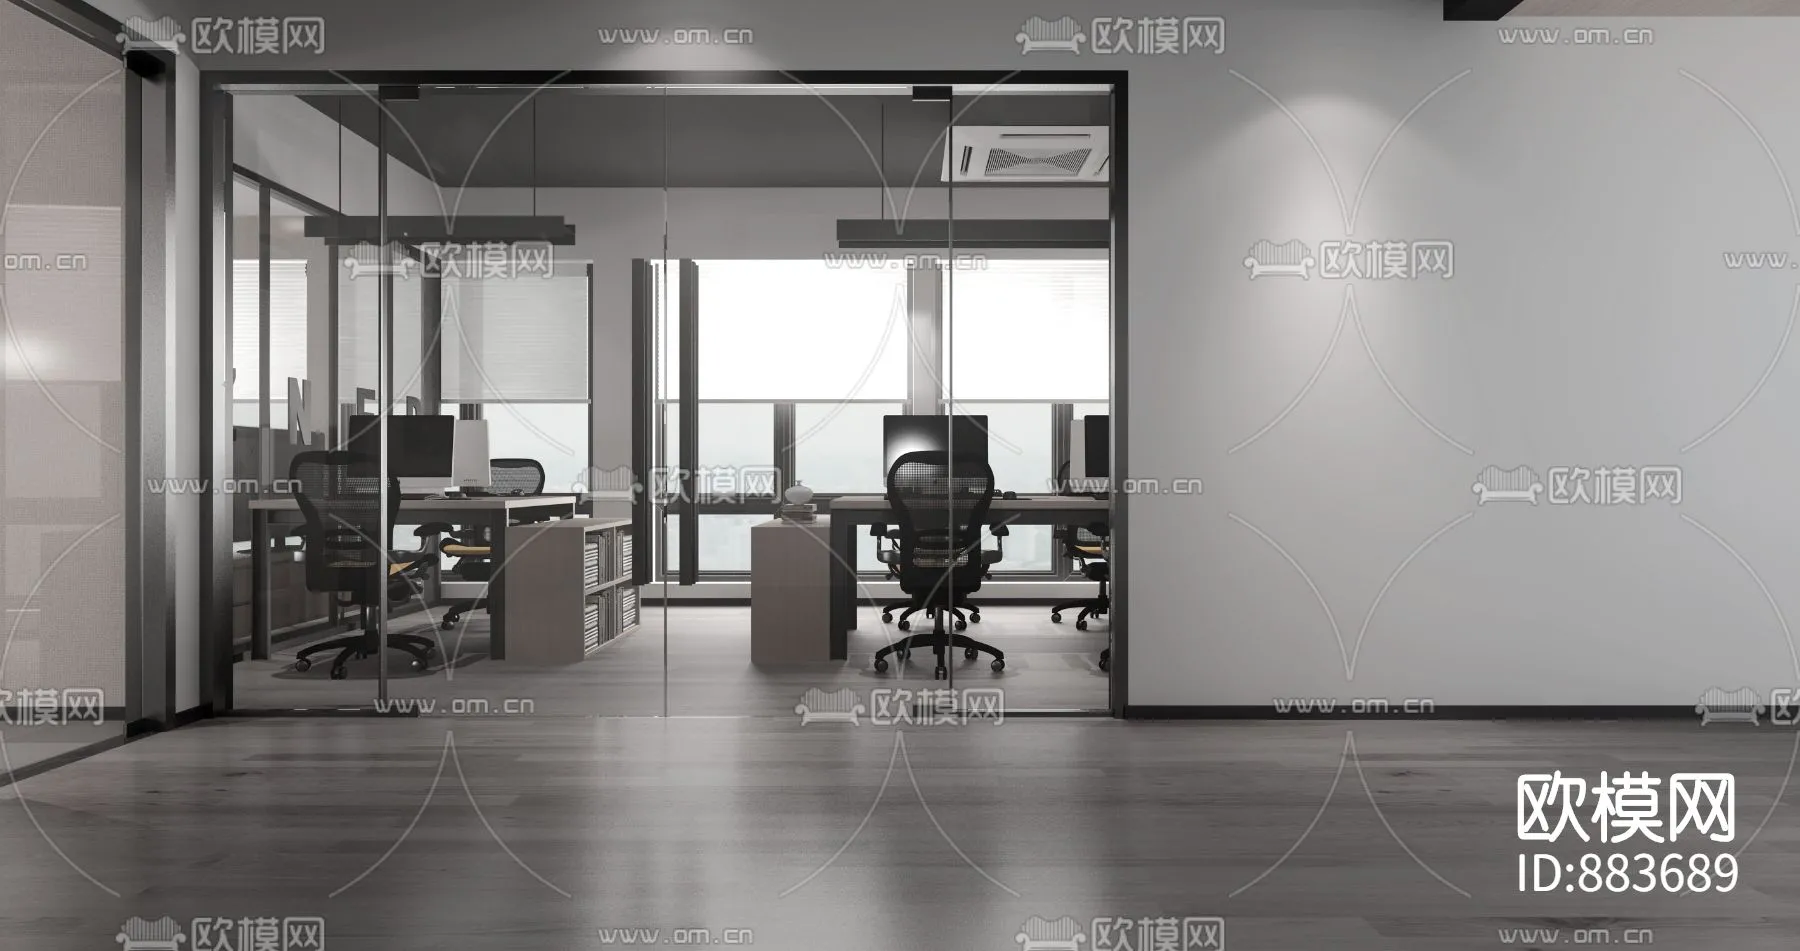 Office 3D Scenes – 0641